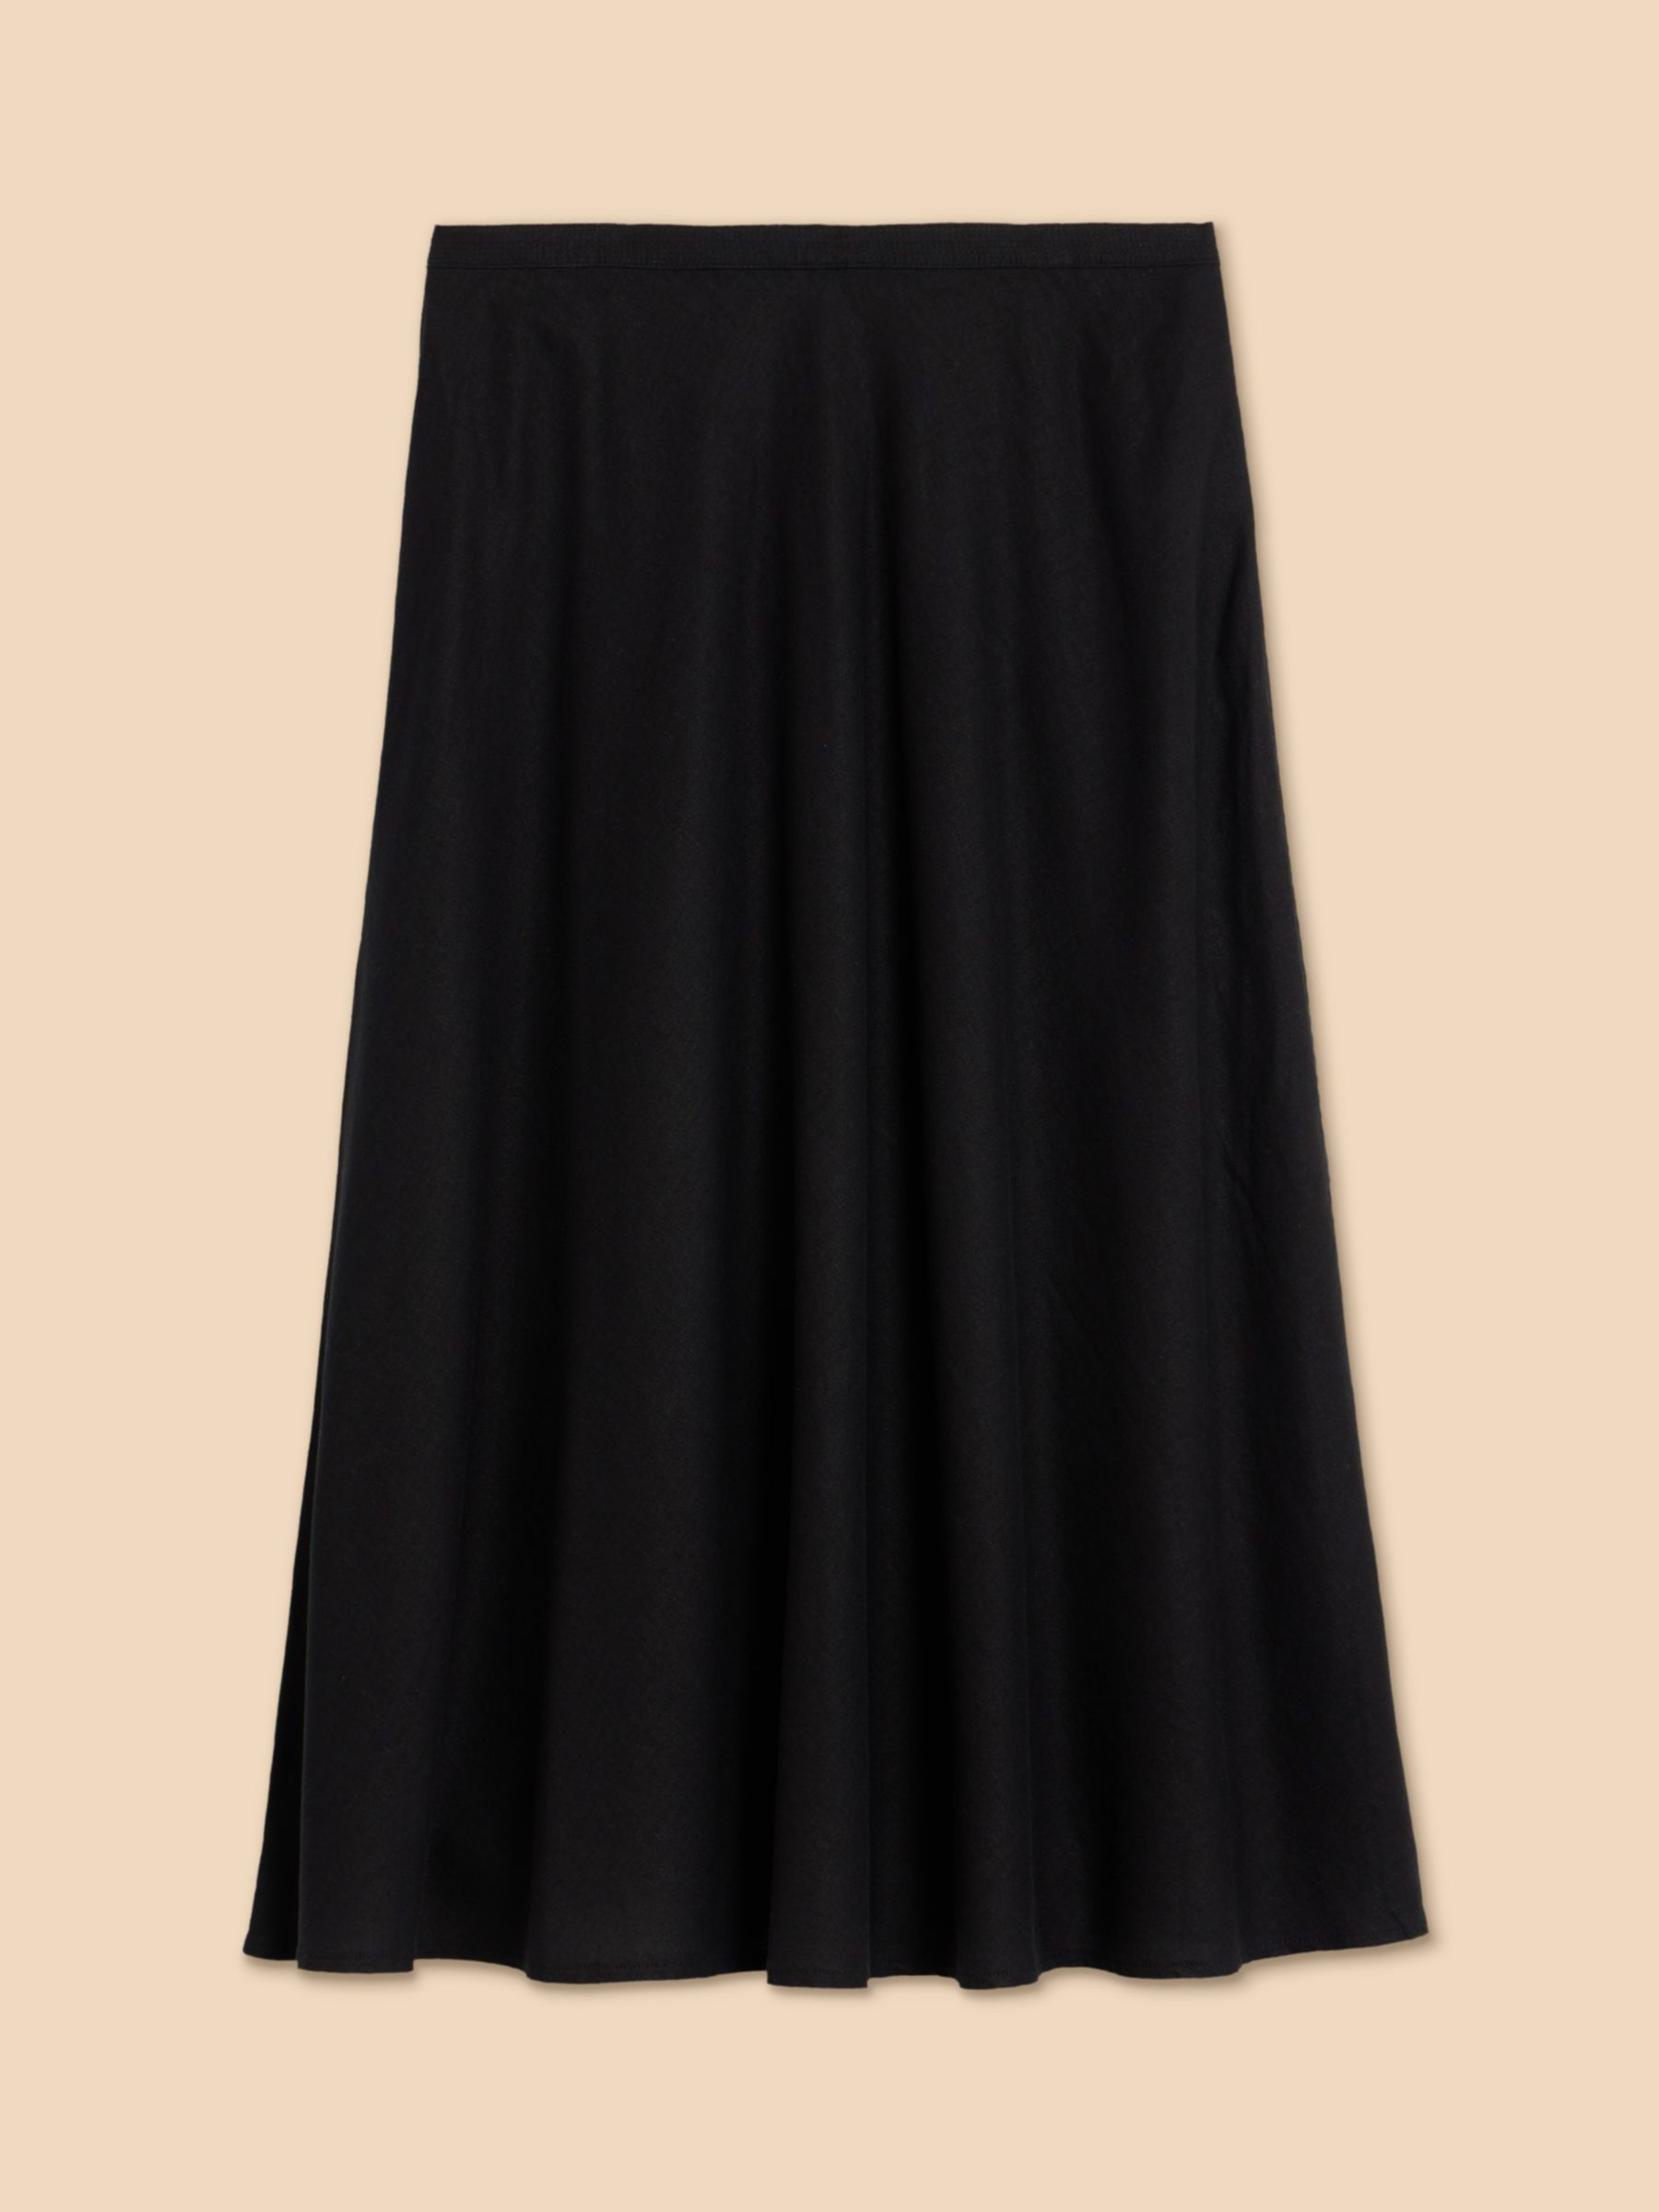 Buy White Stuff Clemence Linen Blend Skirt, Black Online at johnlewis.com